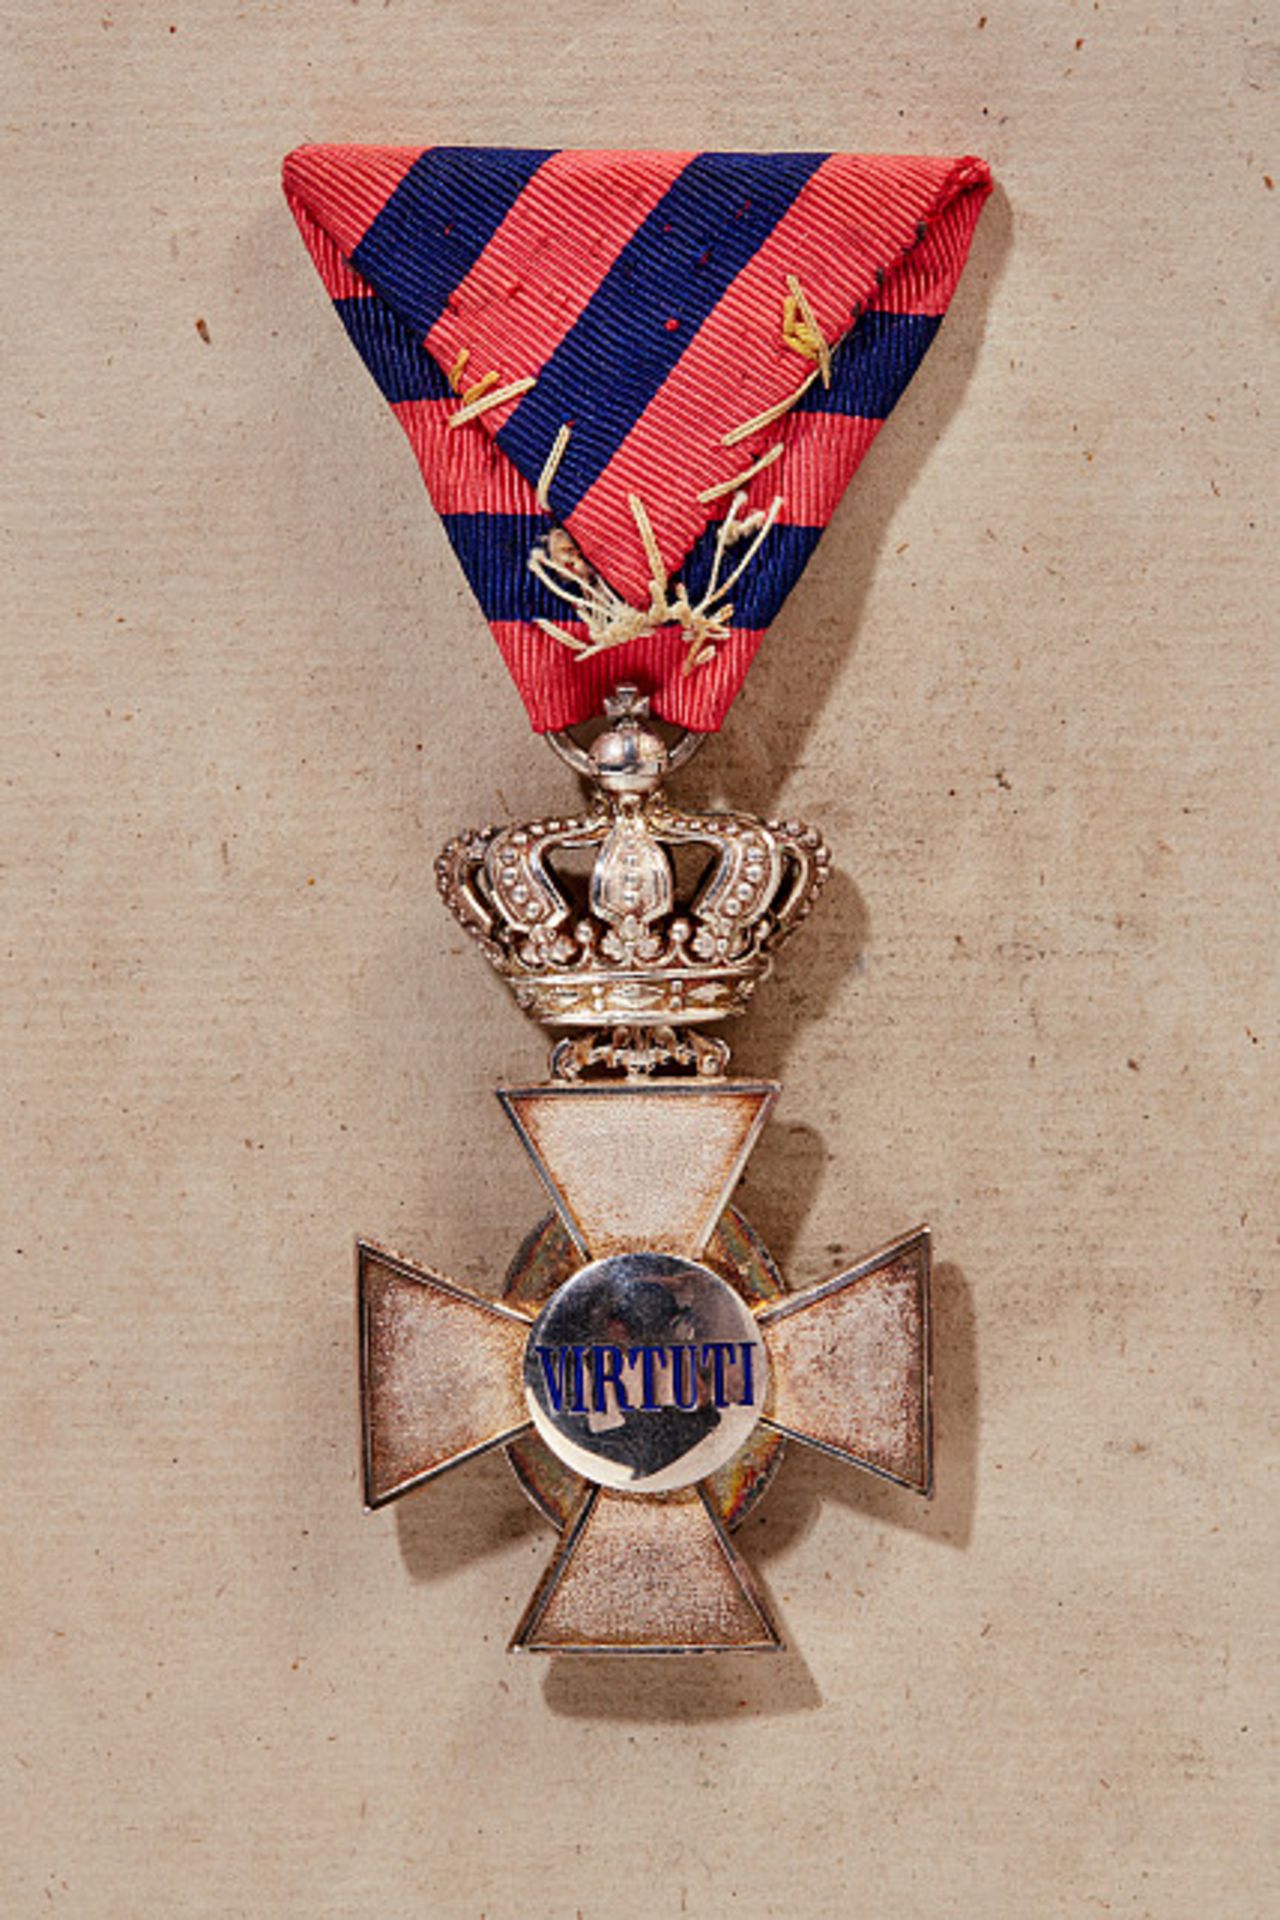 KÖNIGREICH BAYERN - VERDIENSTORDEN VOM HL. MICHAEL : Verdienstkreuz mit Krone, 1910 - 1918.Silber, - Bild 2 aus 4